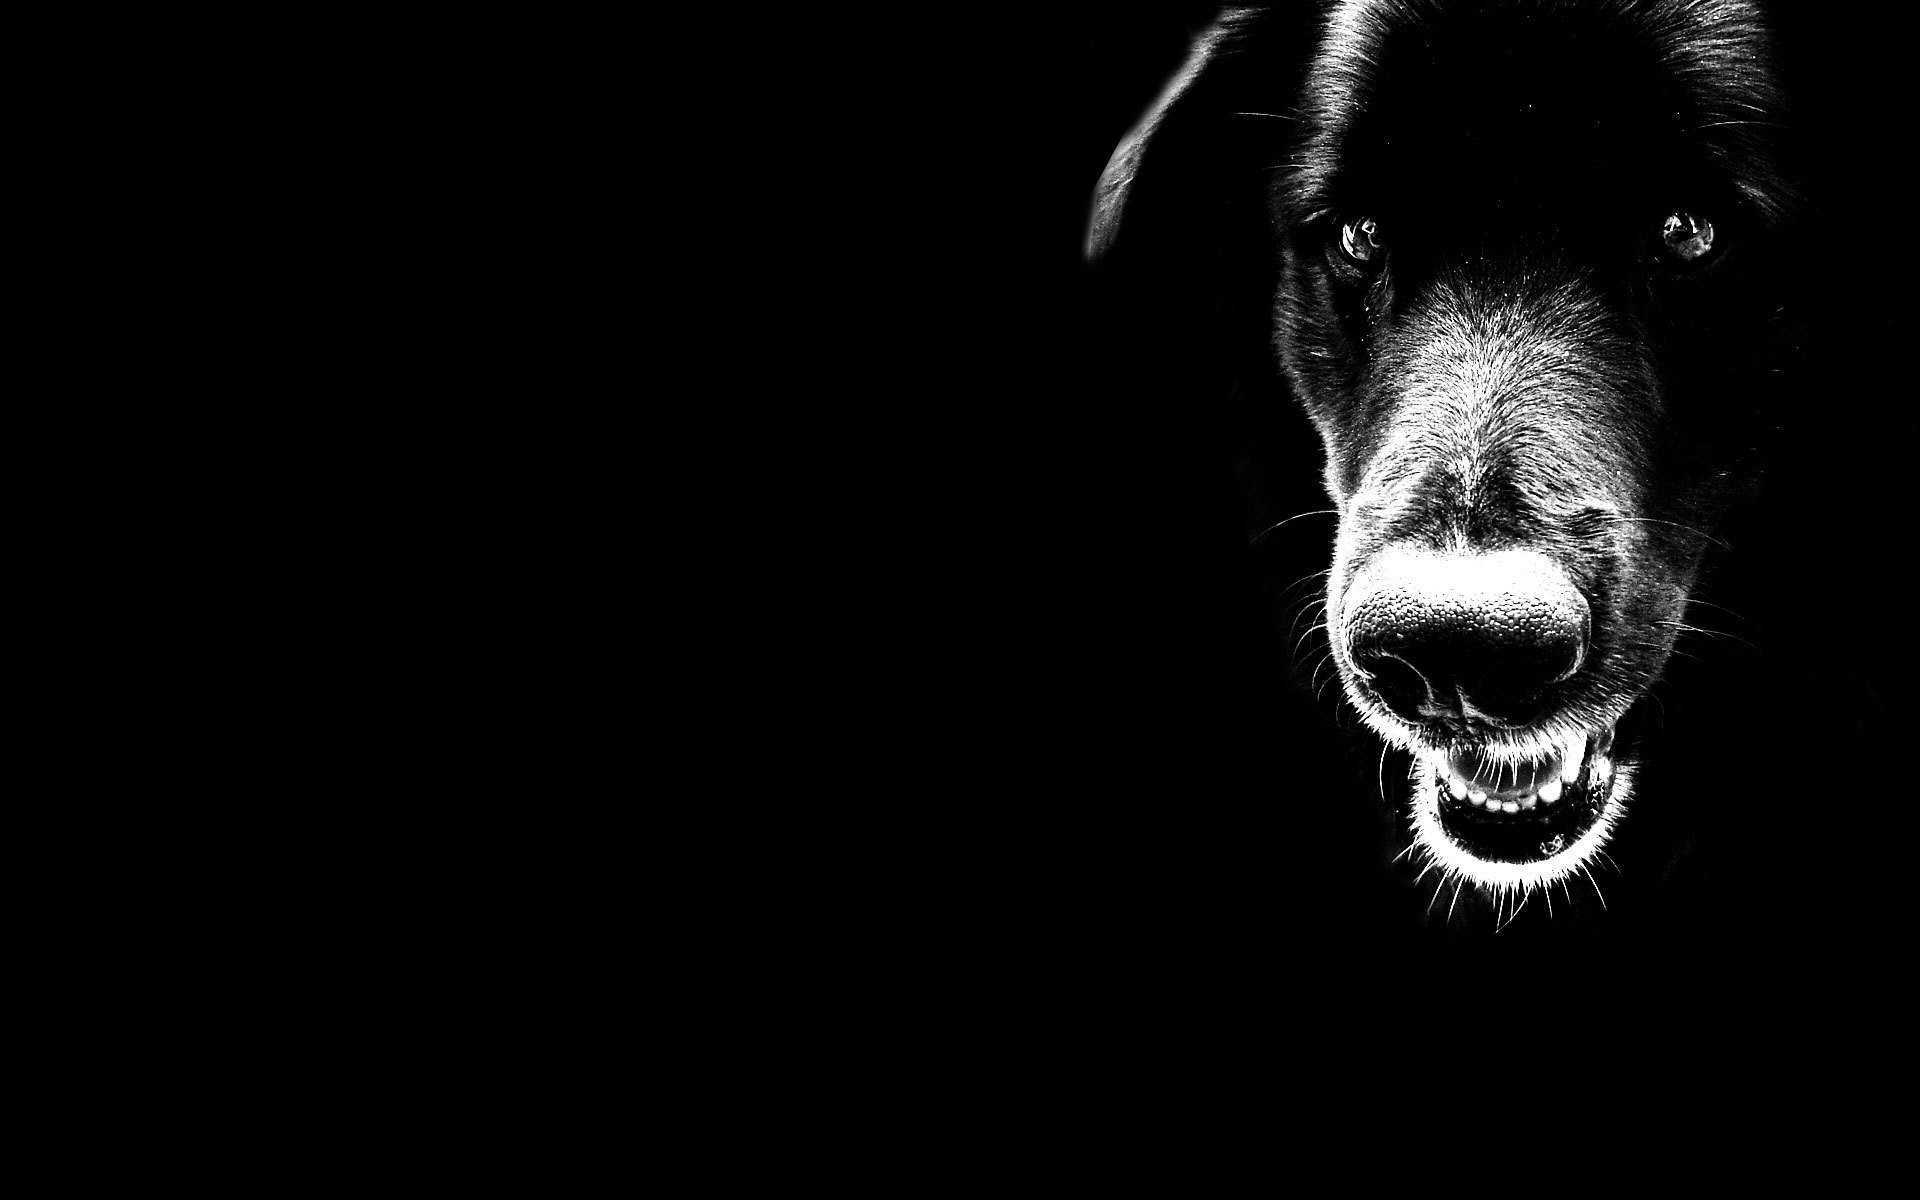 Scary Black Dog